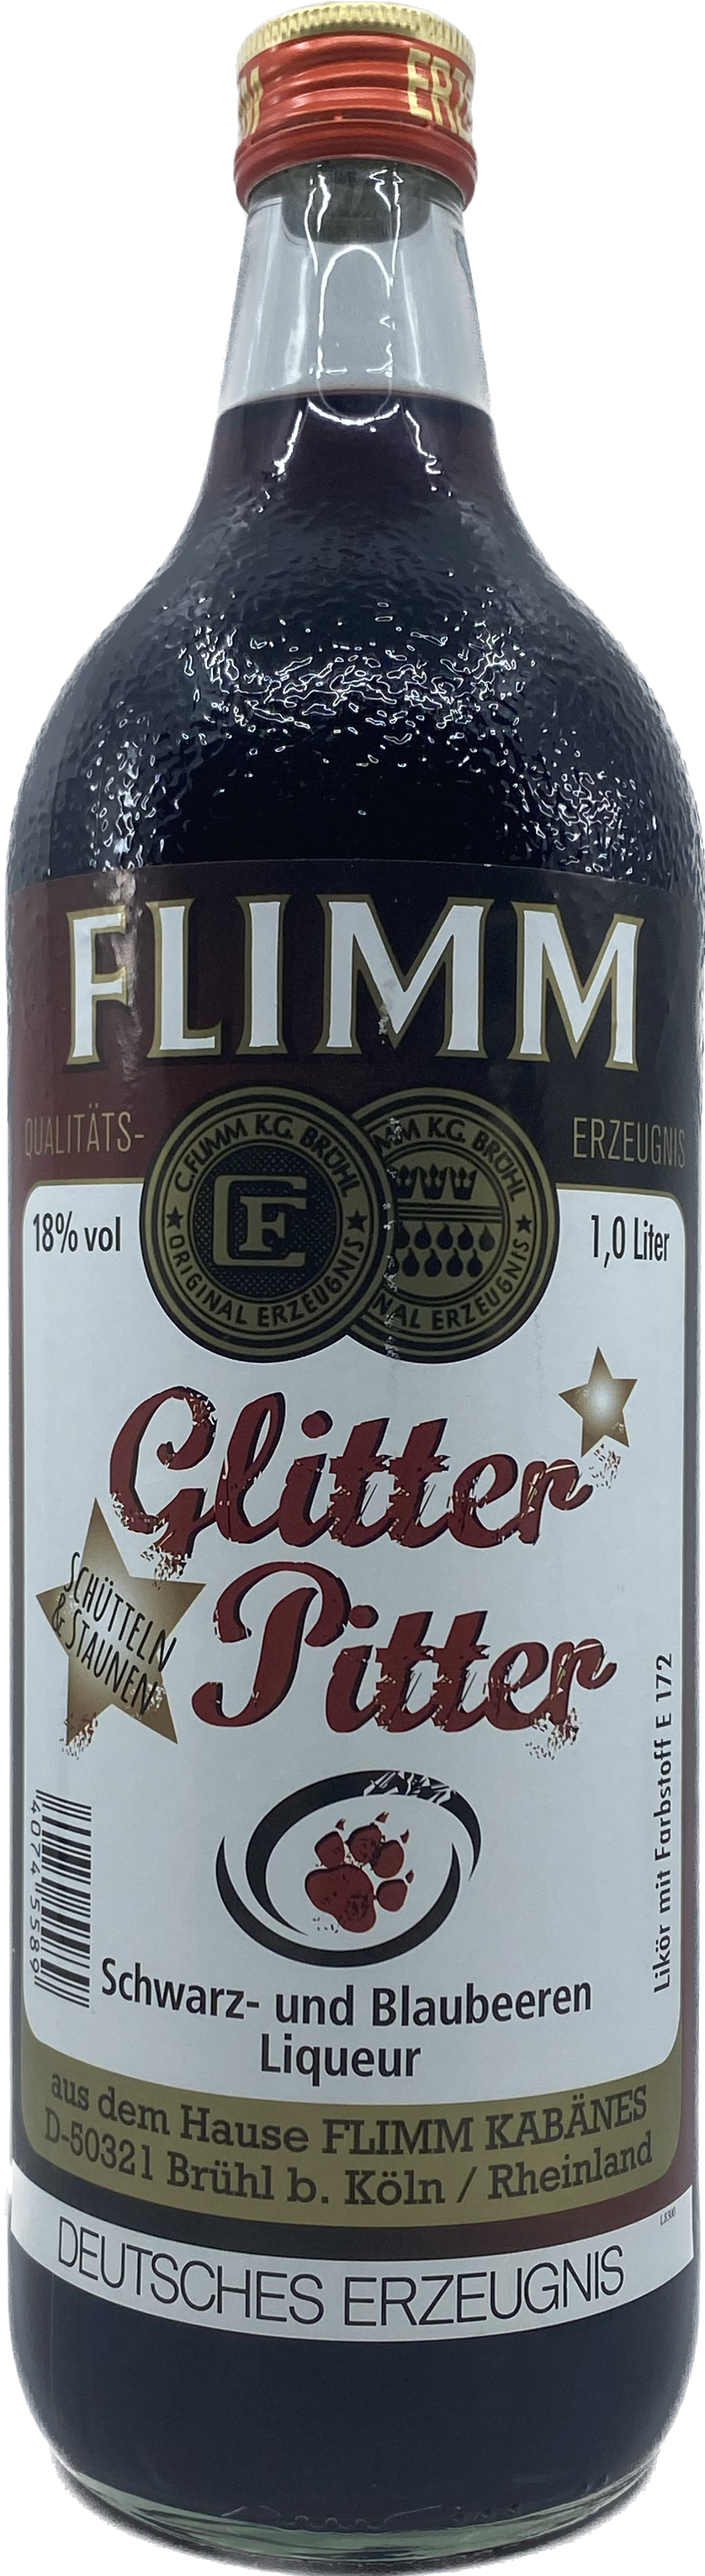 Flimm Glitter Pitter 1l 18%vol.